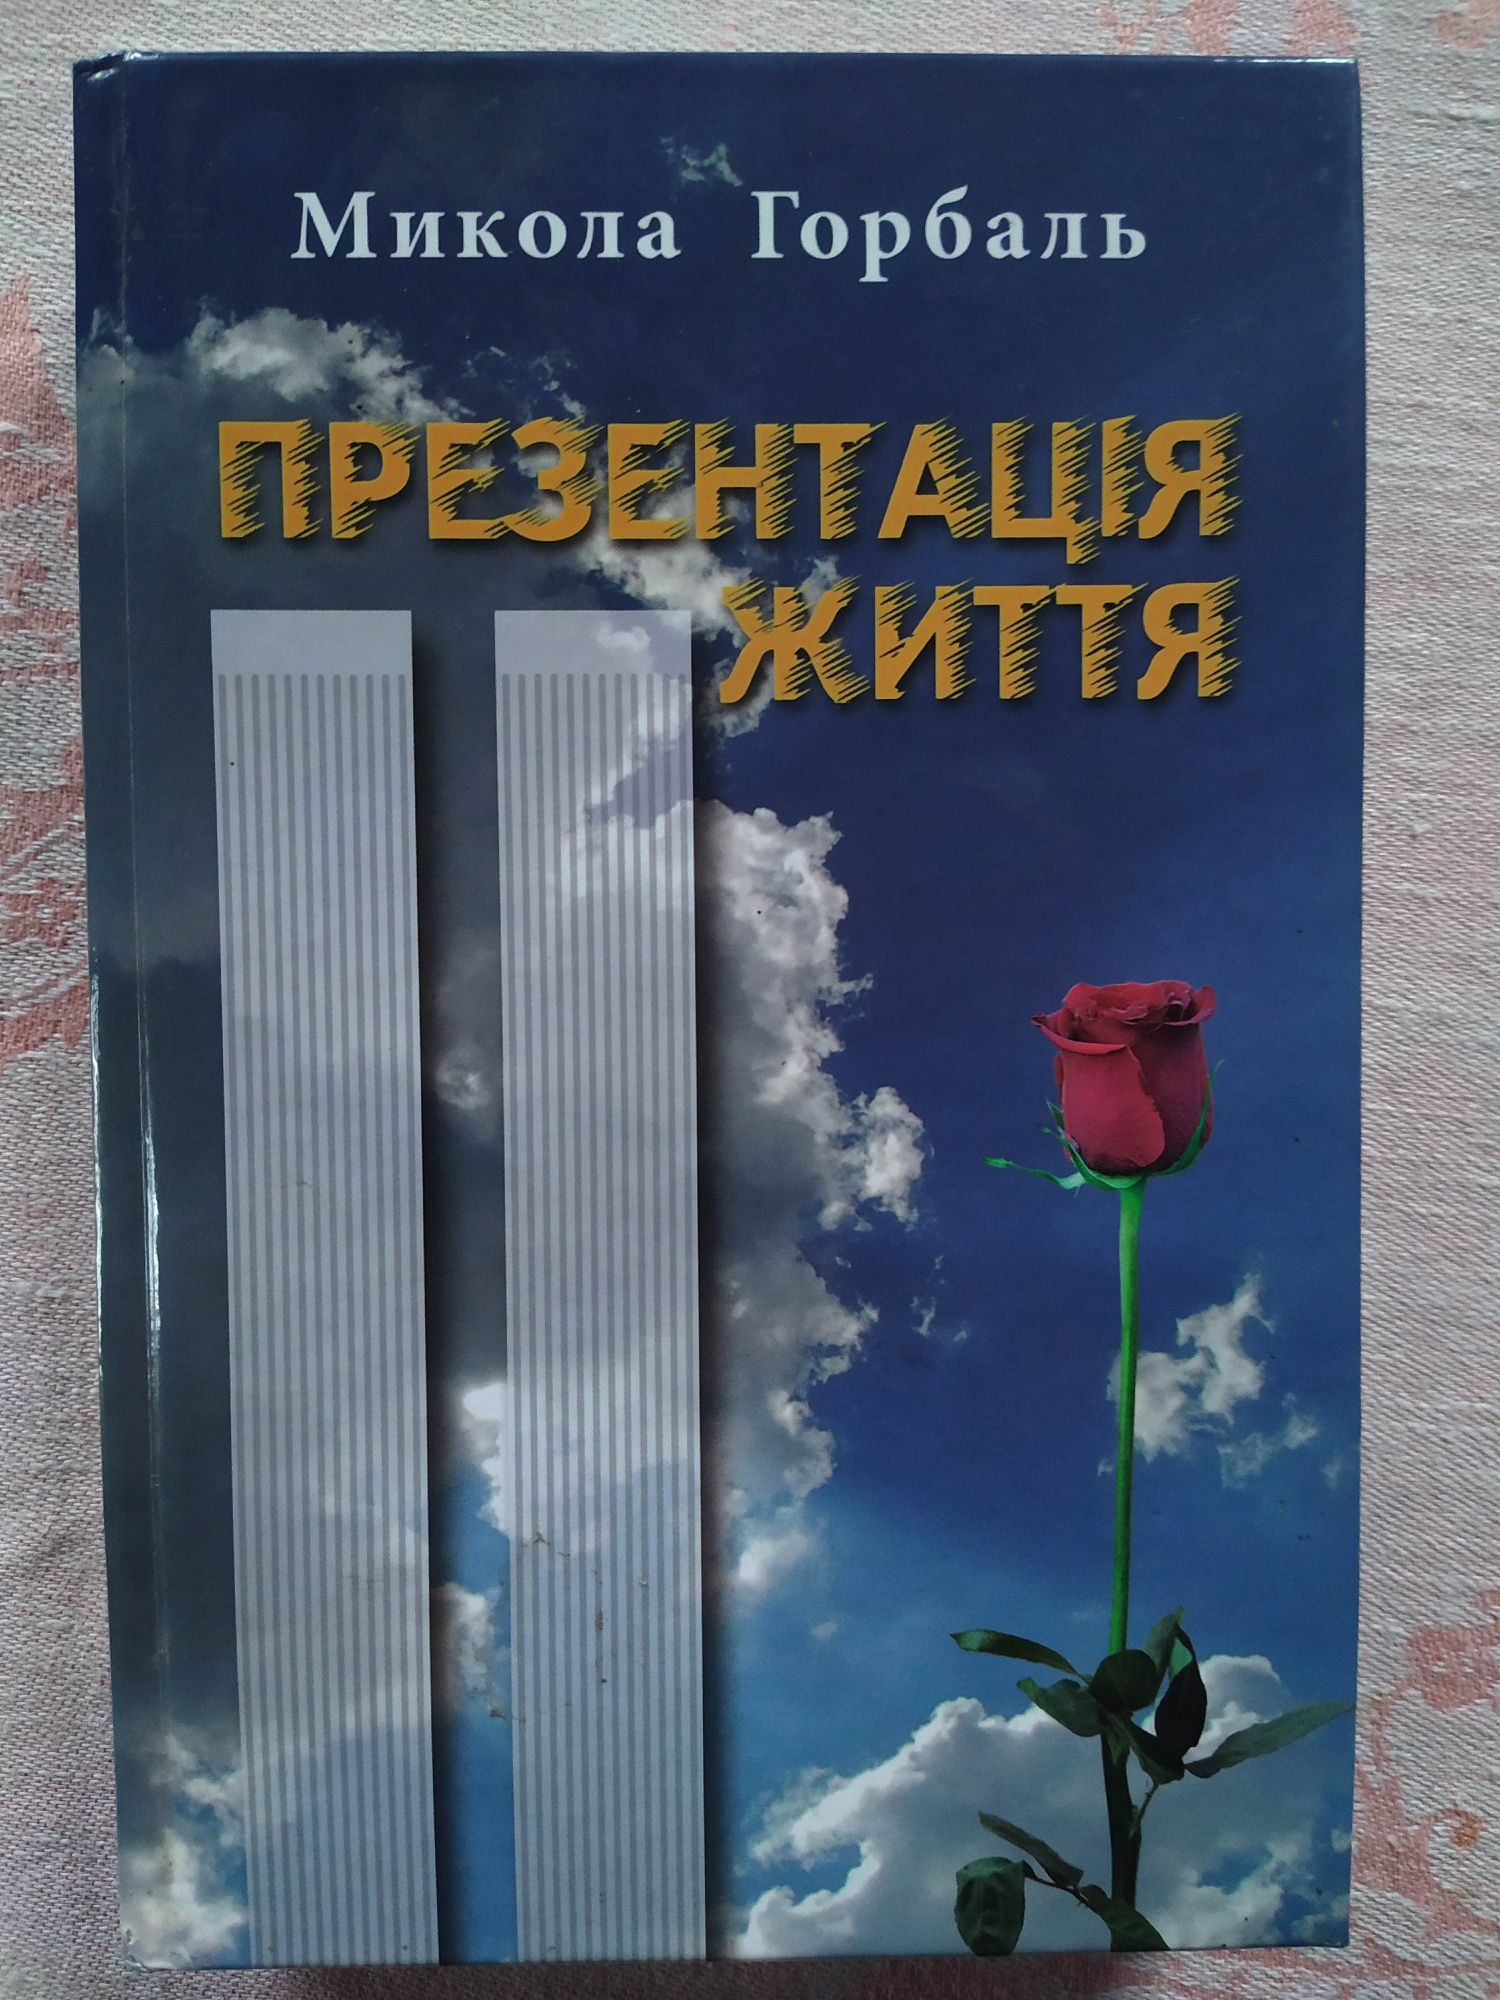 2006 - Микола Горбаль - "Презентація життя"